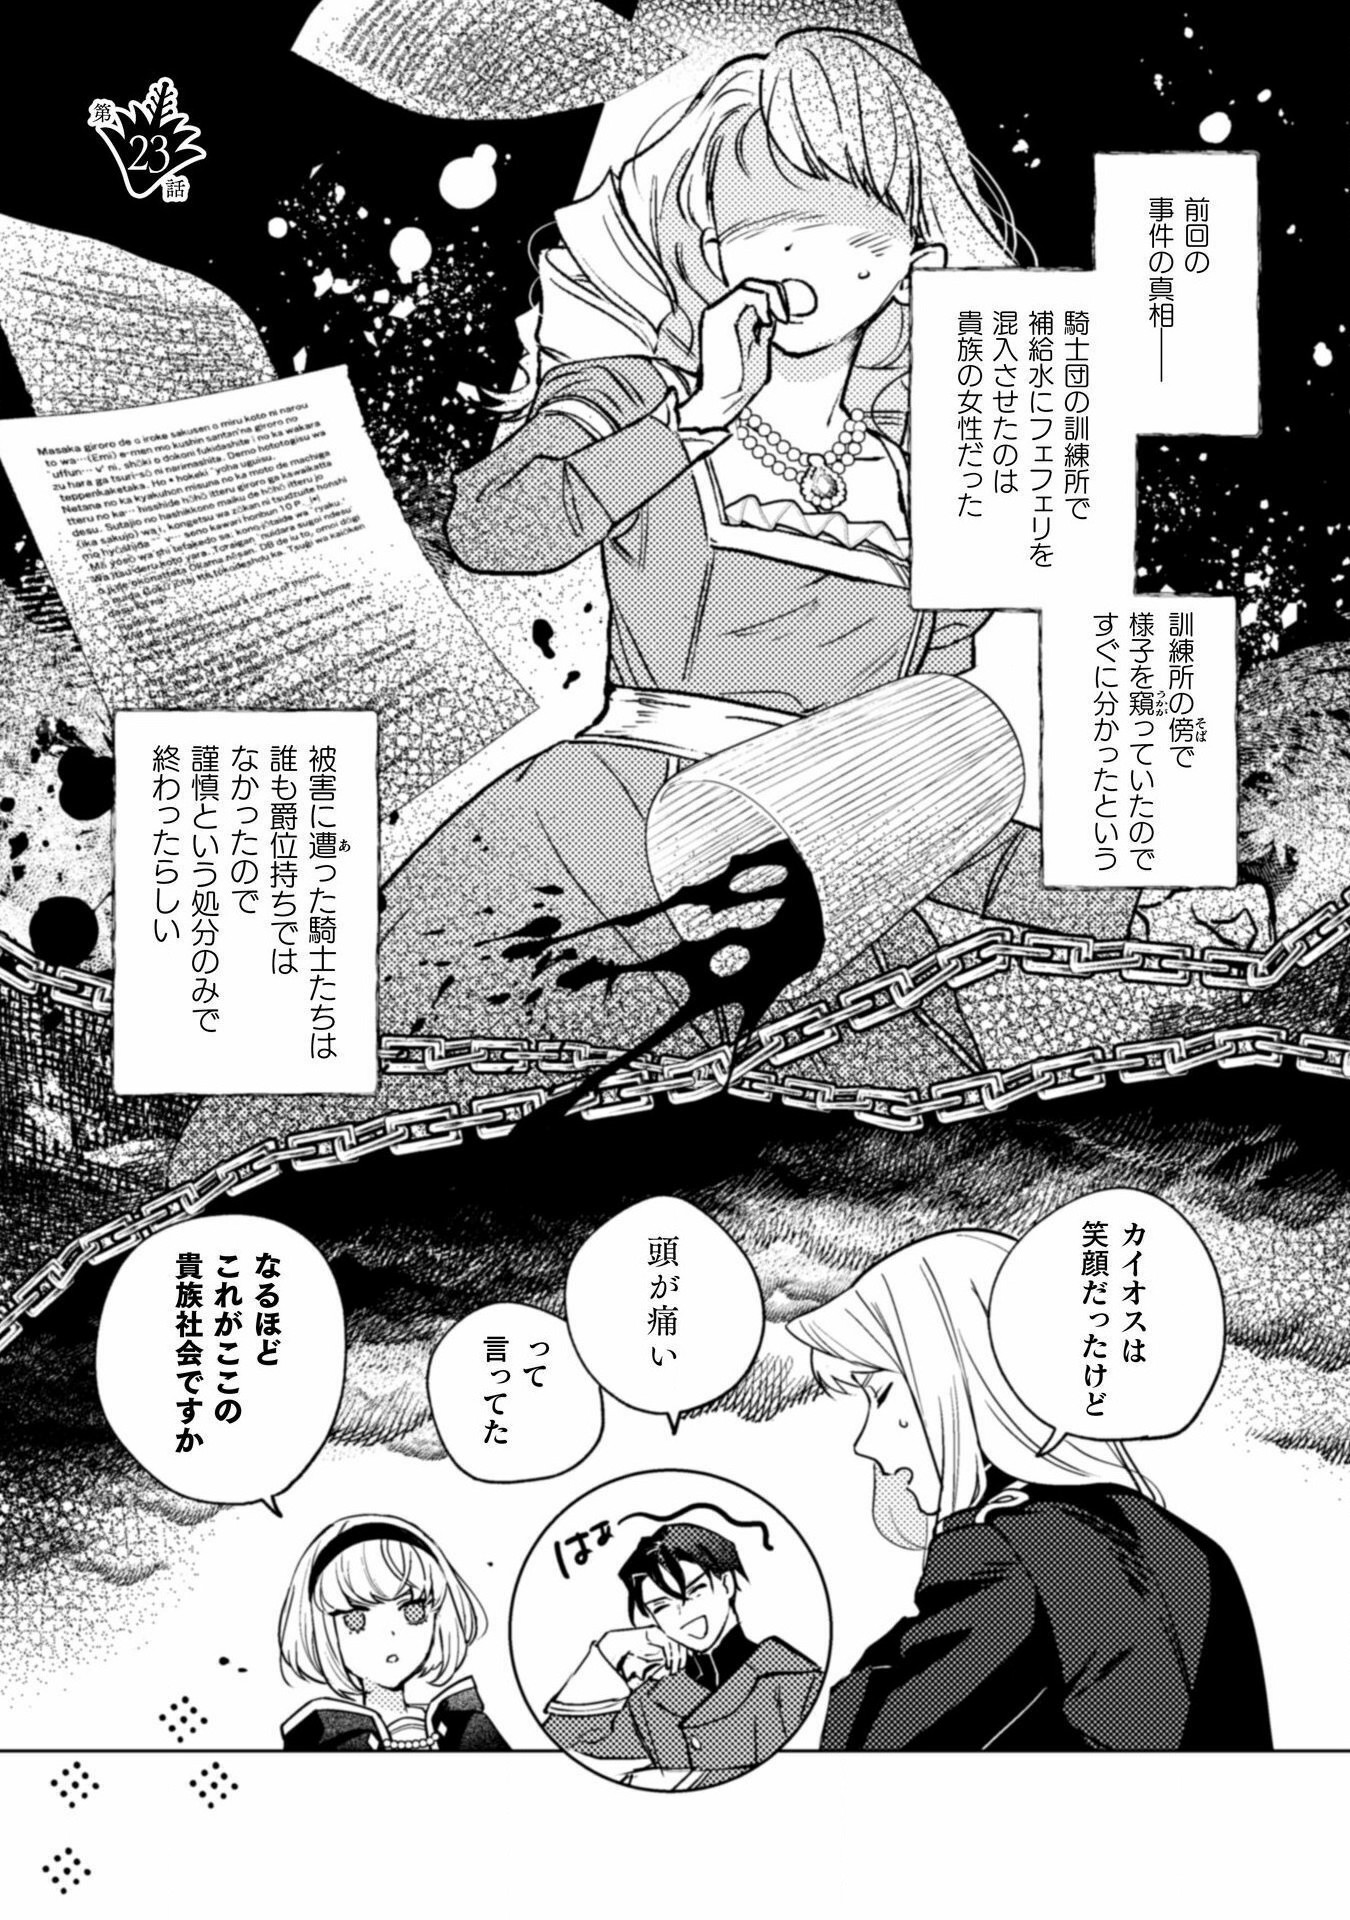 Uranaishi ni wa Hana Kishi no Koigokoro ga Mieteimasu - Chapter 23 - Page 1